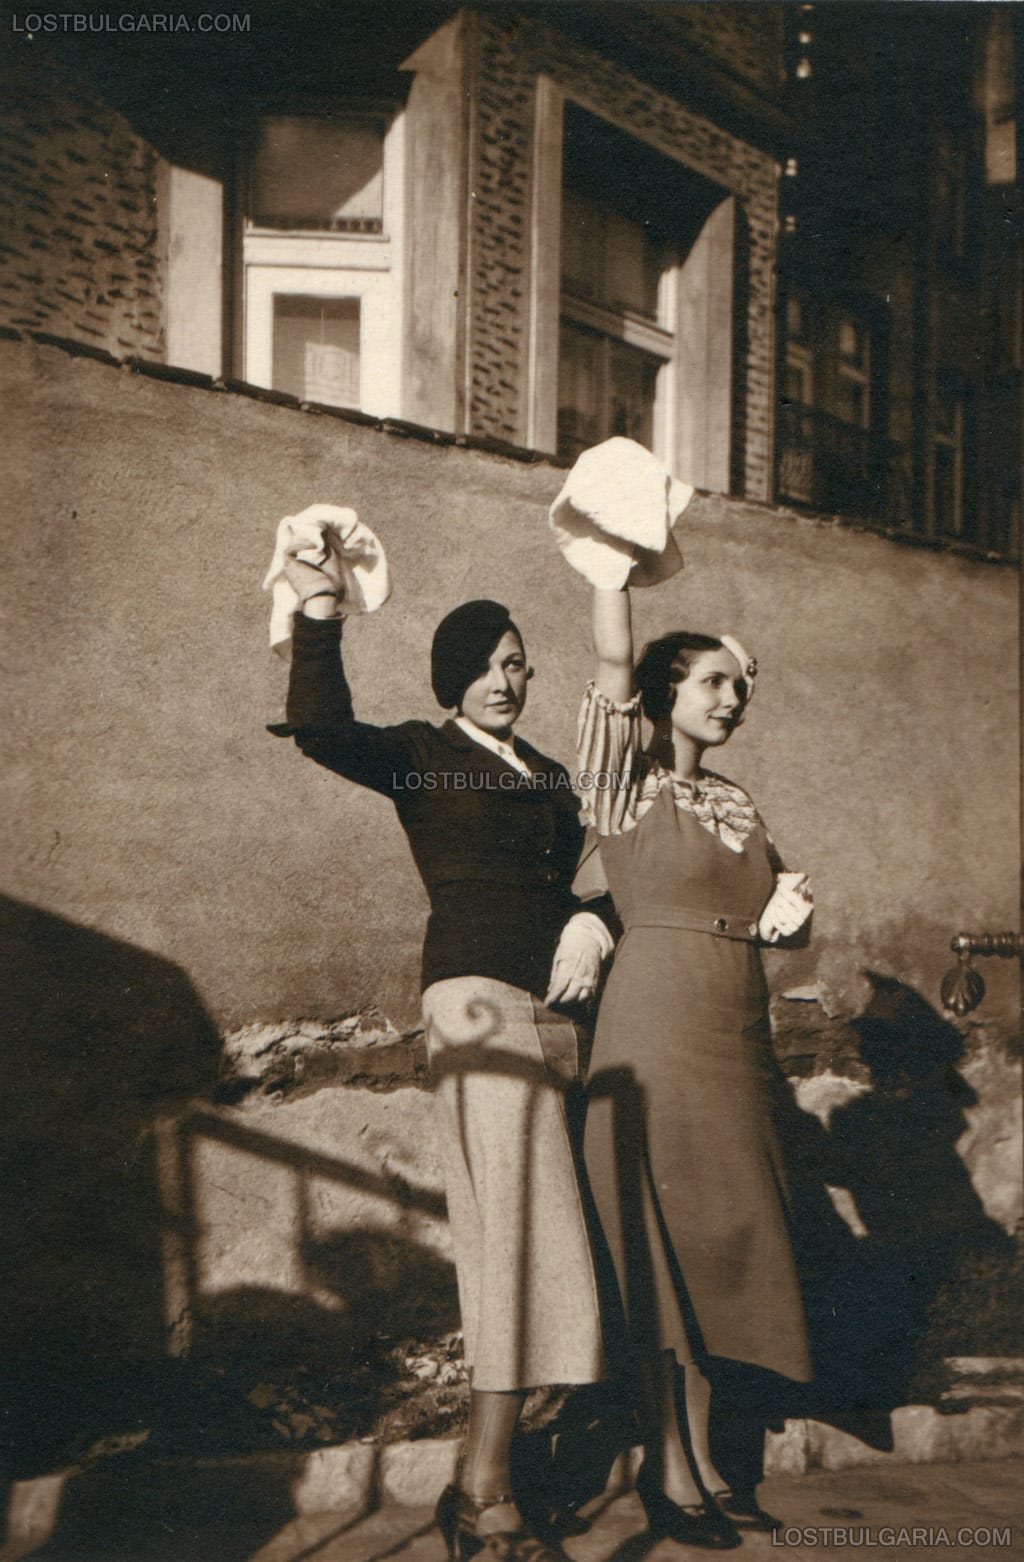 Две млади дами в любителски фото-разказ, трето действие - изпращане пред портата, София, ул. "Цар Иван Асен II" №6, 1927-8 г.